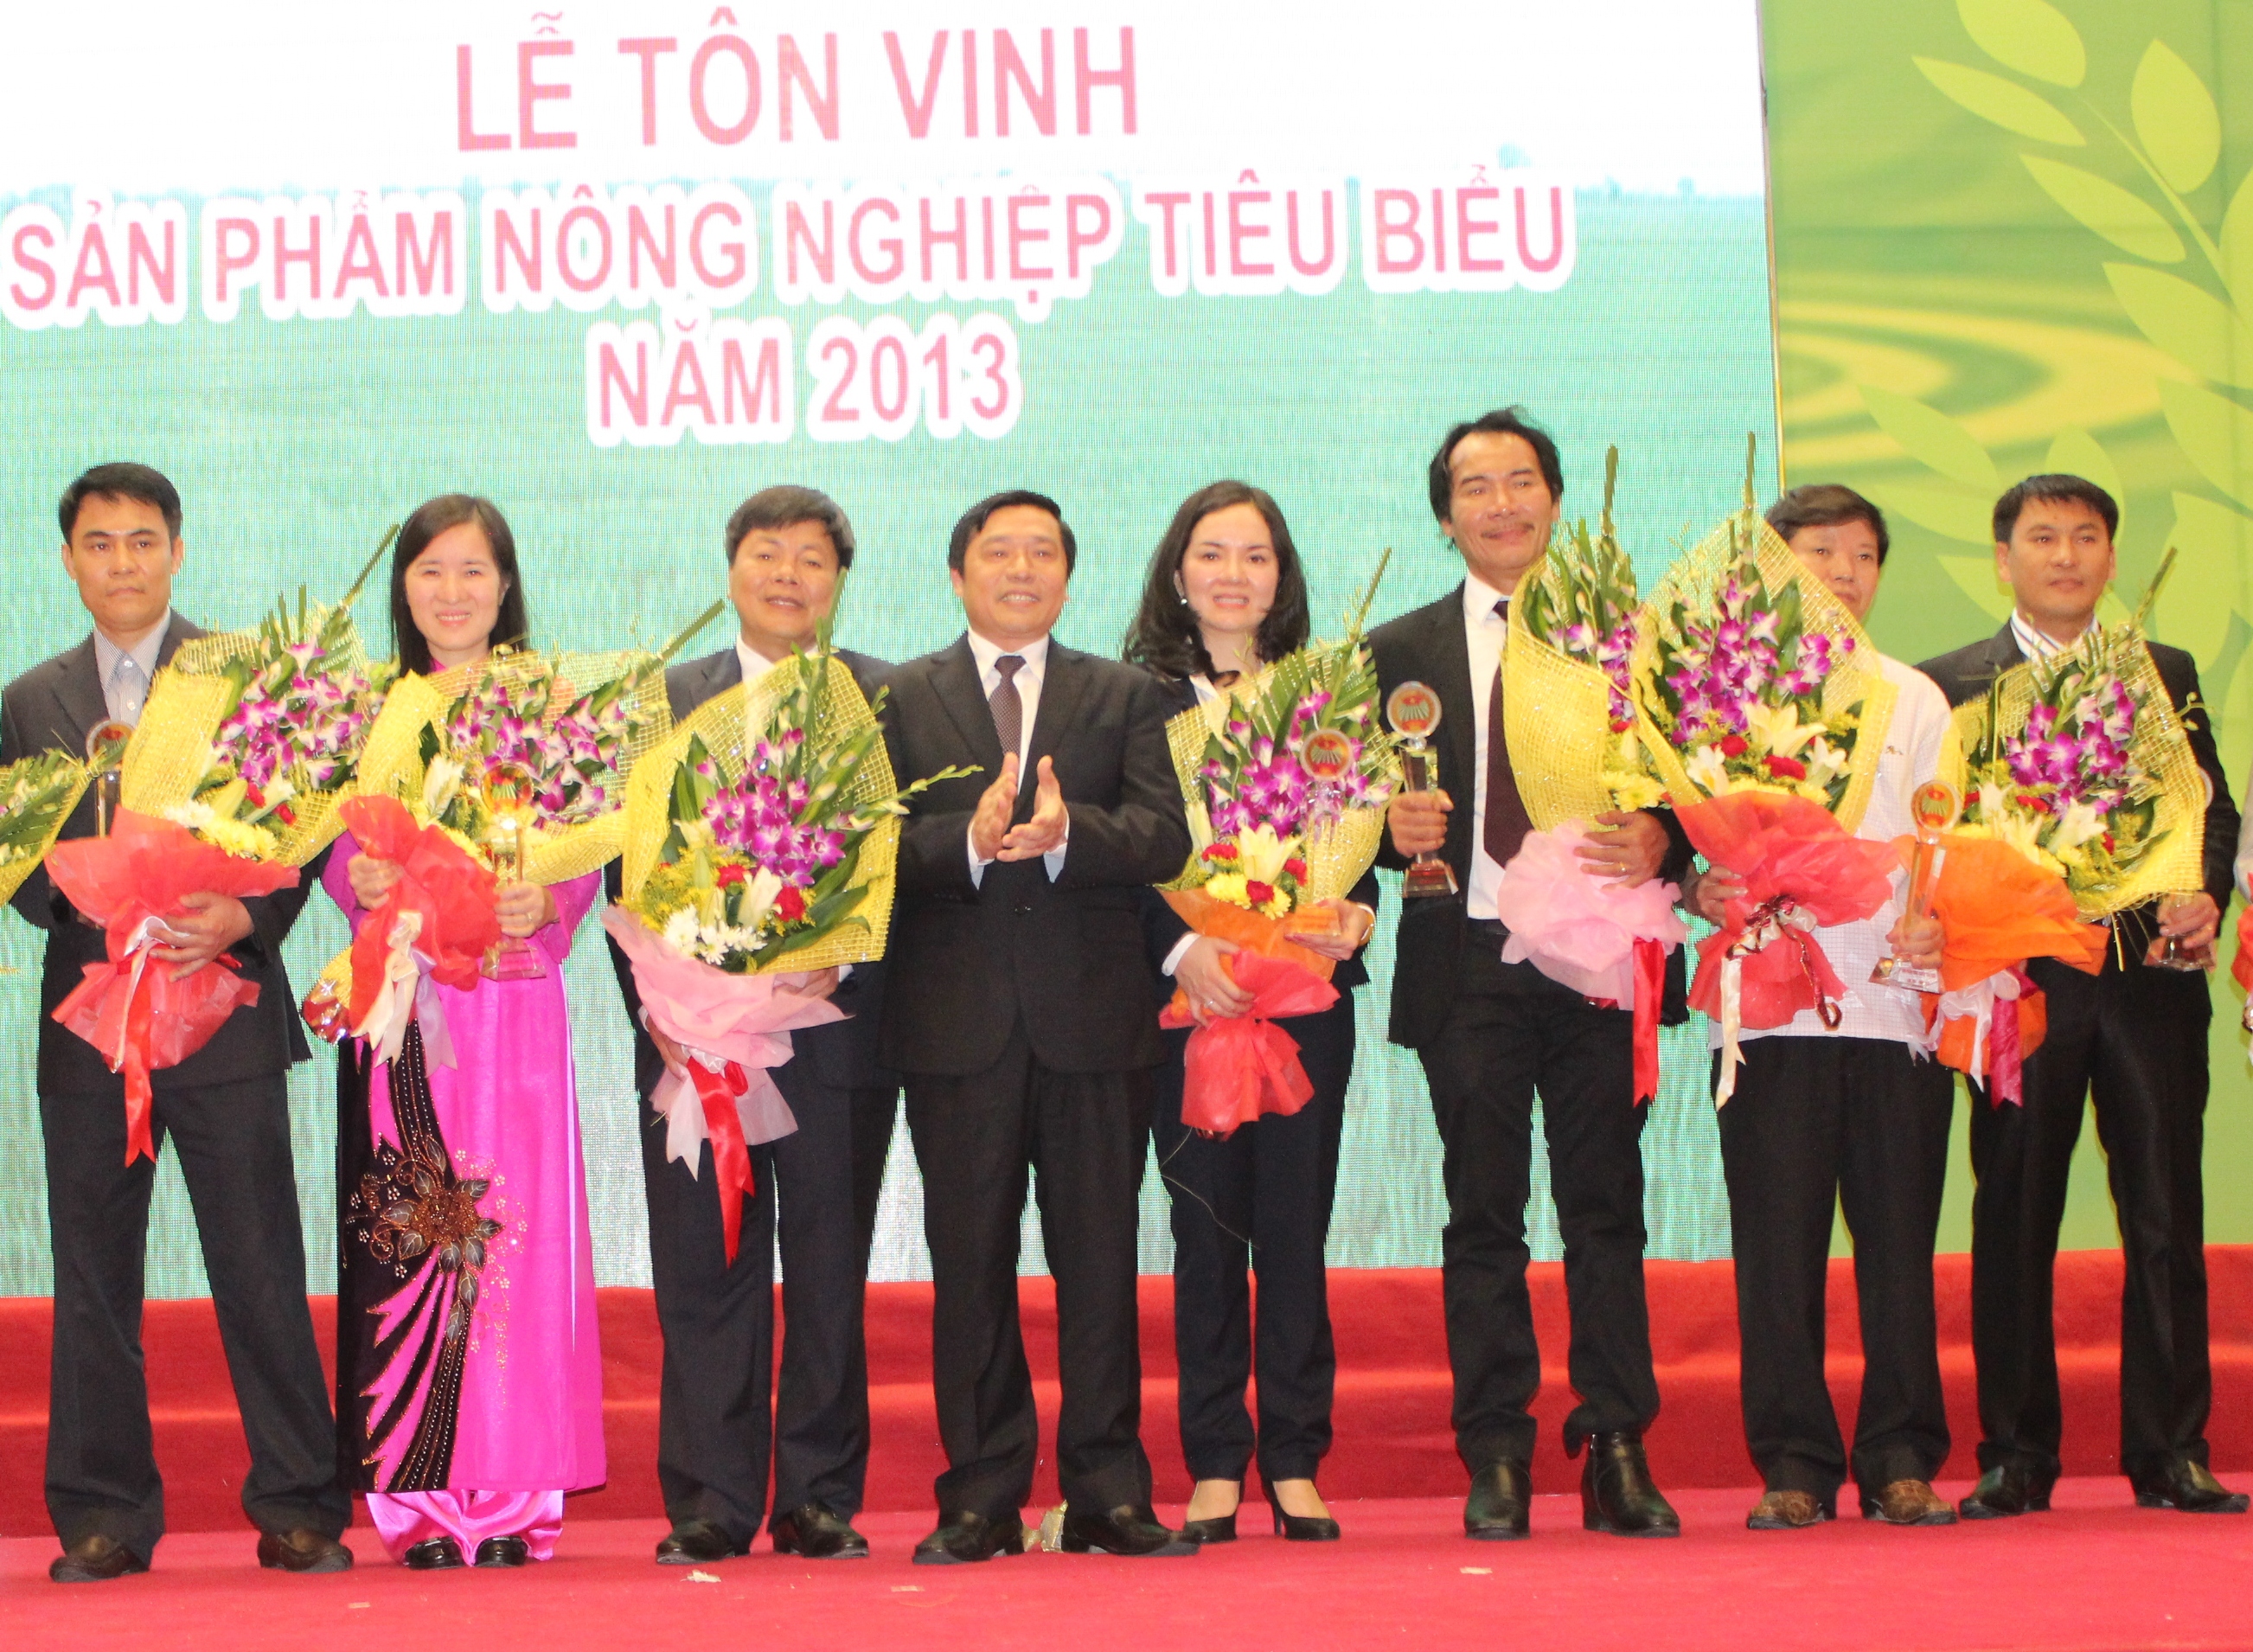 Đạm Phú Mỹ nhận danh hiệu “Sản phẩm nông nghiệp tiêu biểu năm 2013”